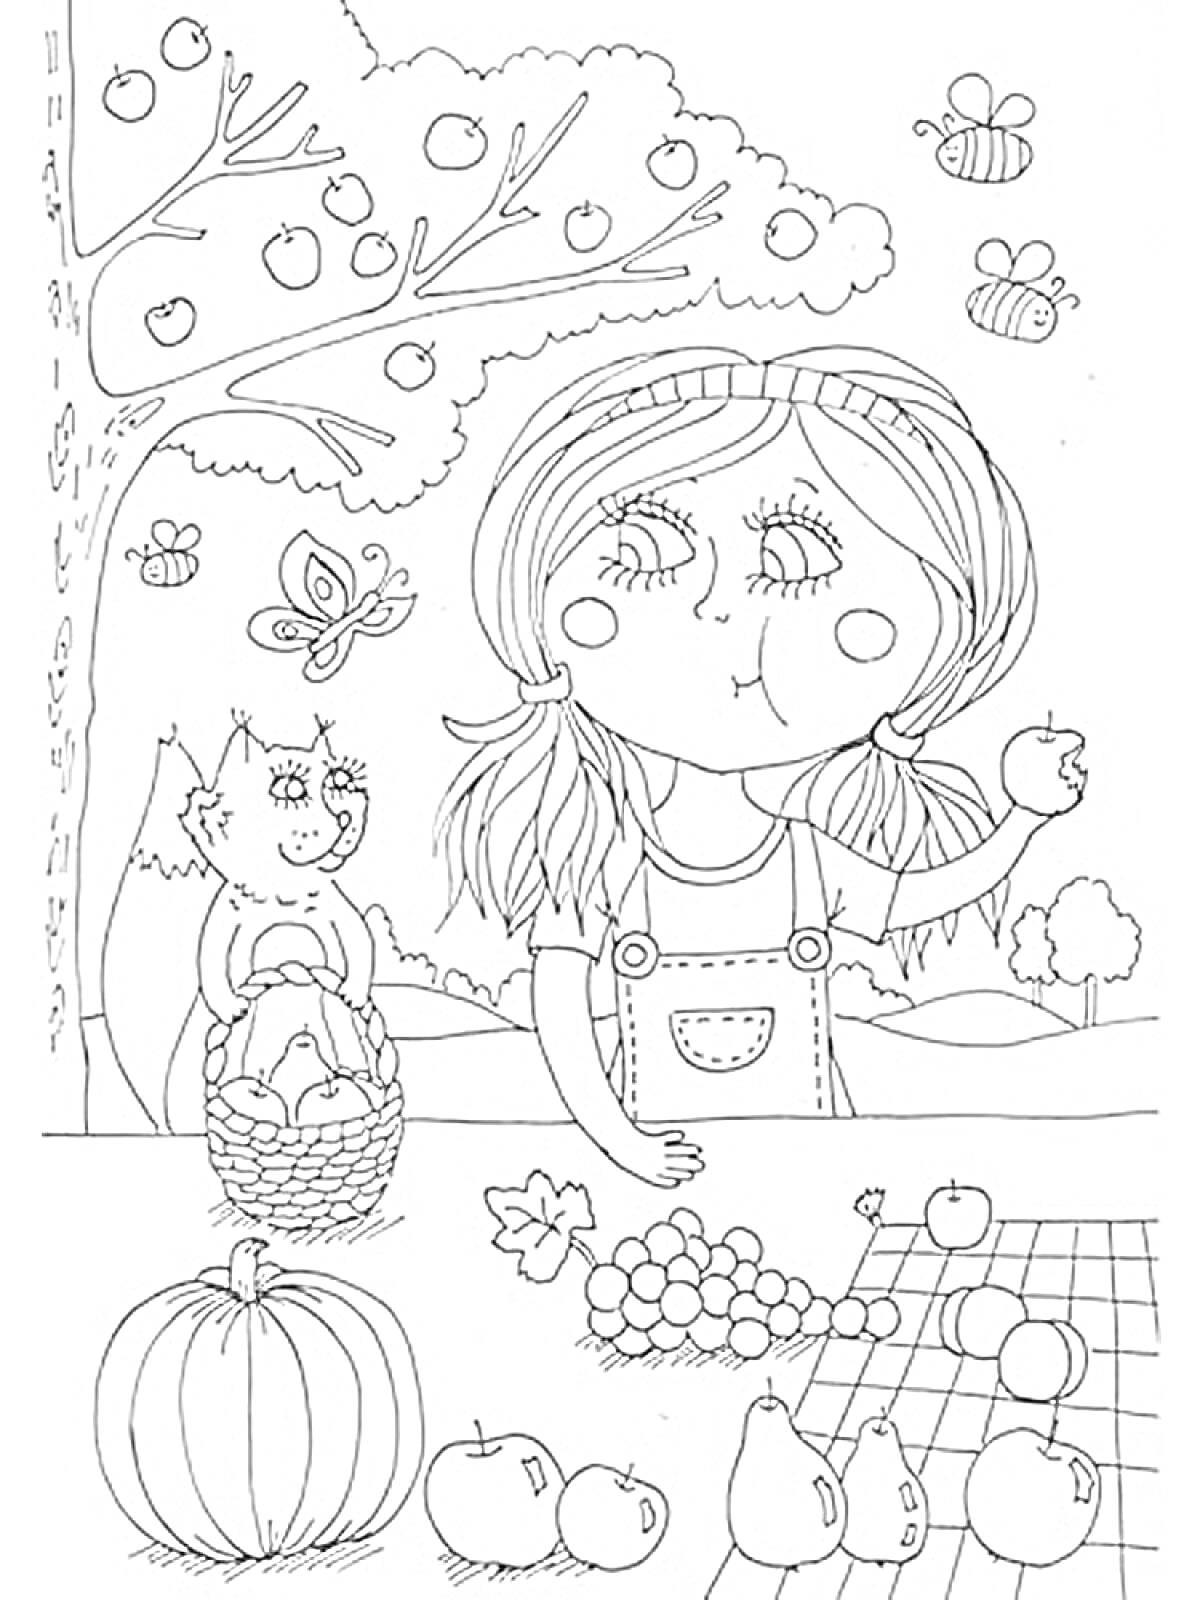 Девочка с яблоками в саду, белка с корзинкой, дерево с яблоками, бабочка, пчёлы, виноград, тыква, пейзаж с деревьями